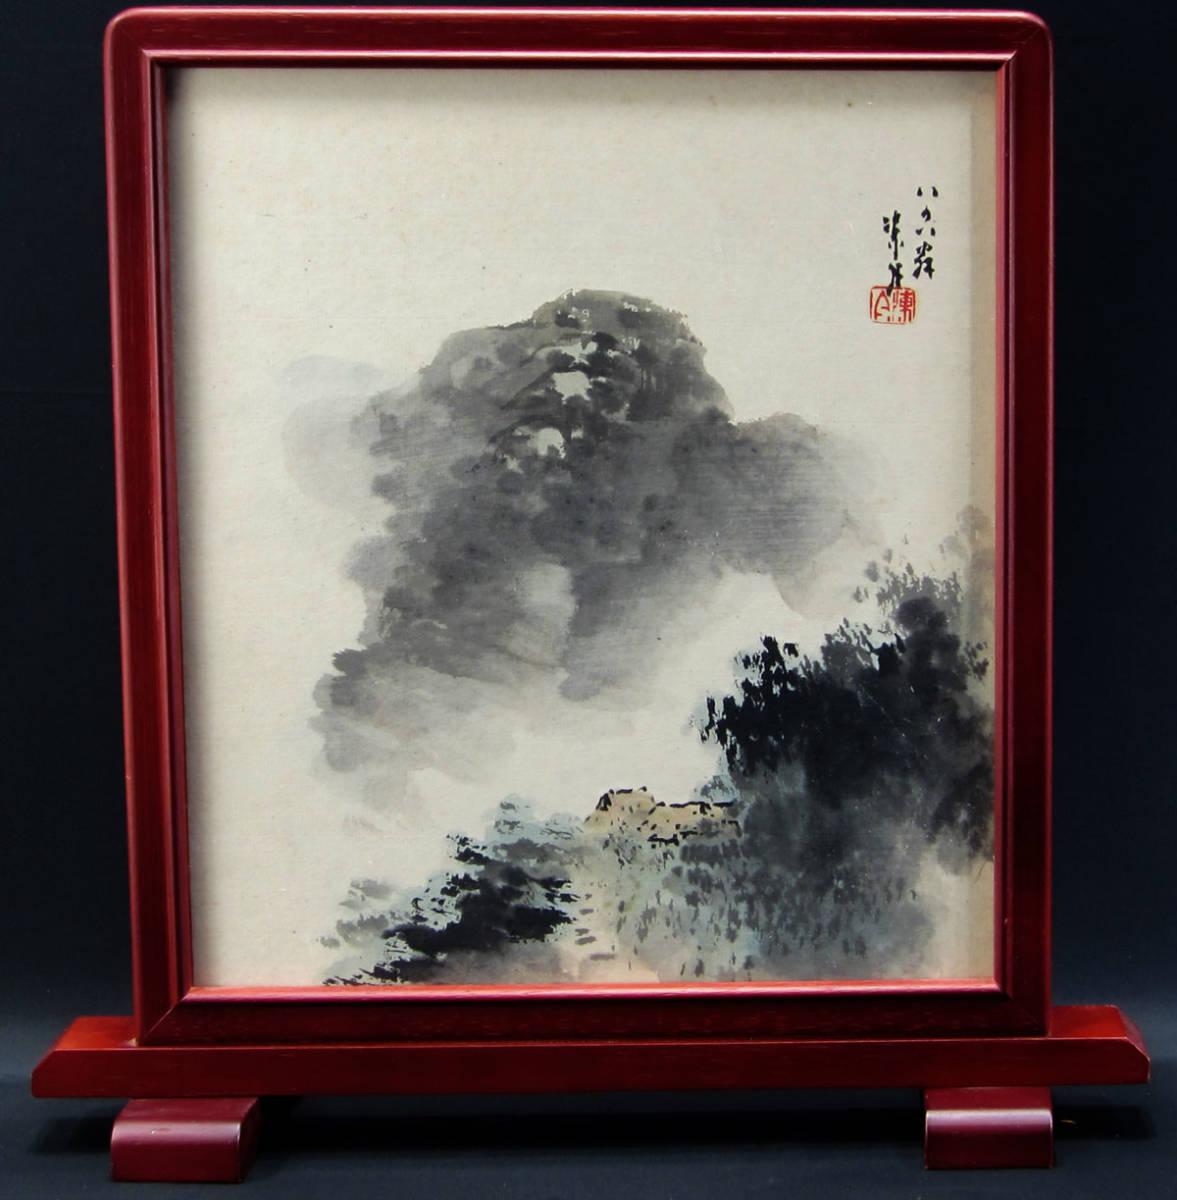 لوحة Geji Togetsu للمناظر الطبيعية، لوحة يابانية مضمونة، لوحة شيكيشي الأصلية, تلوين, اللوحة اليابانية, آحرون